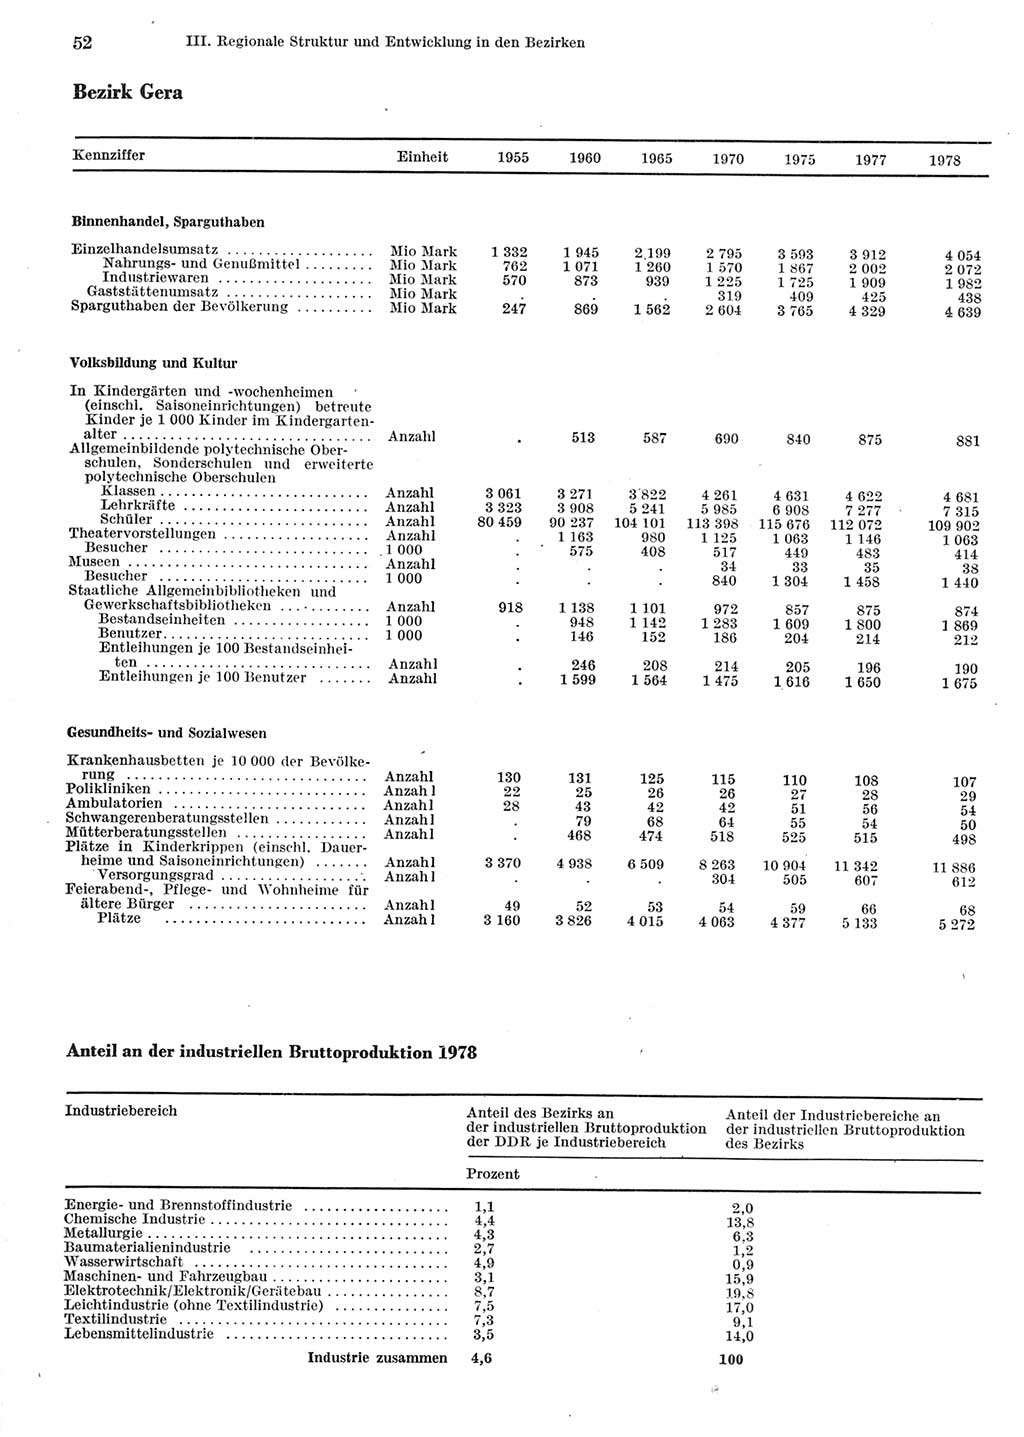 Statistisches Jahrbuch der Deutschen Demokratischen Republik (DDR) 1979, Seite 52 (Stat. Jb. DDR 1979, S. 52)